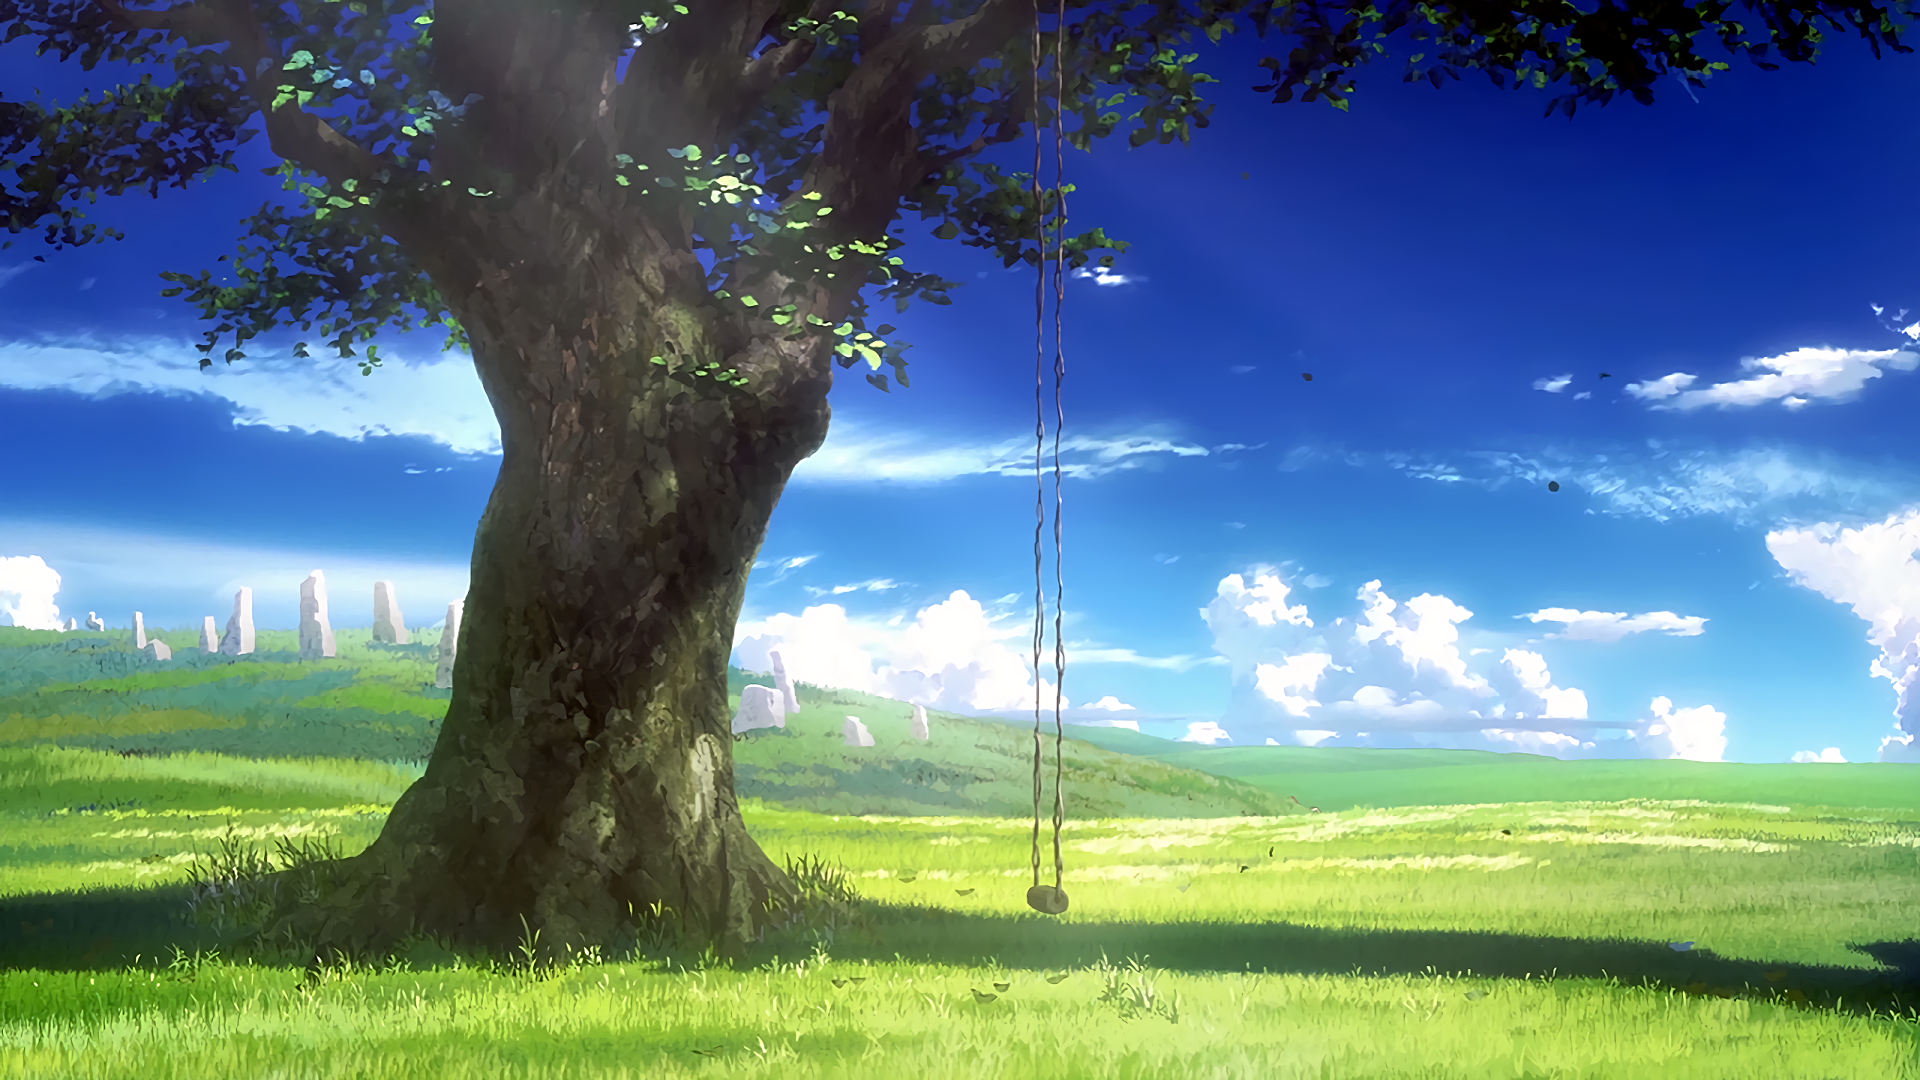 Cảm nhận sức mạnh của hoa cỏ trong anime khi bạn đặt chân đến nơi đó. Hãy cùng tận hưởng khung cảnh vô cùng đẹp mắt trong anime flower field được chắt chiu đến từng chi tiết.